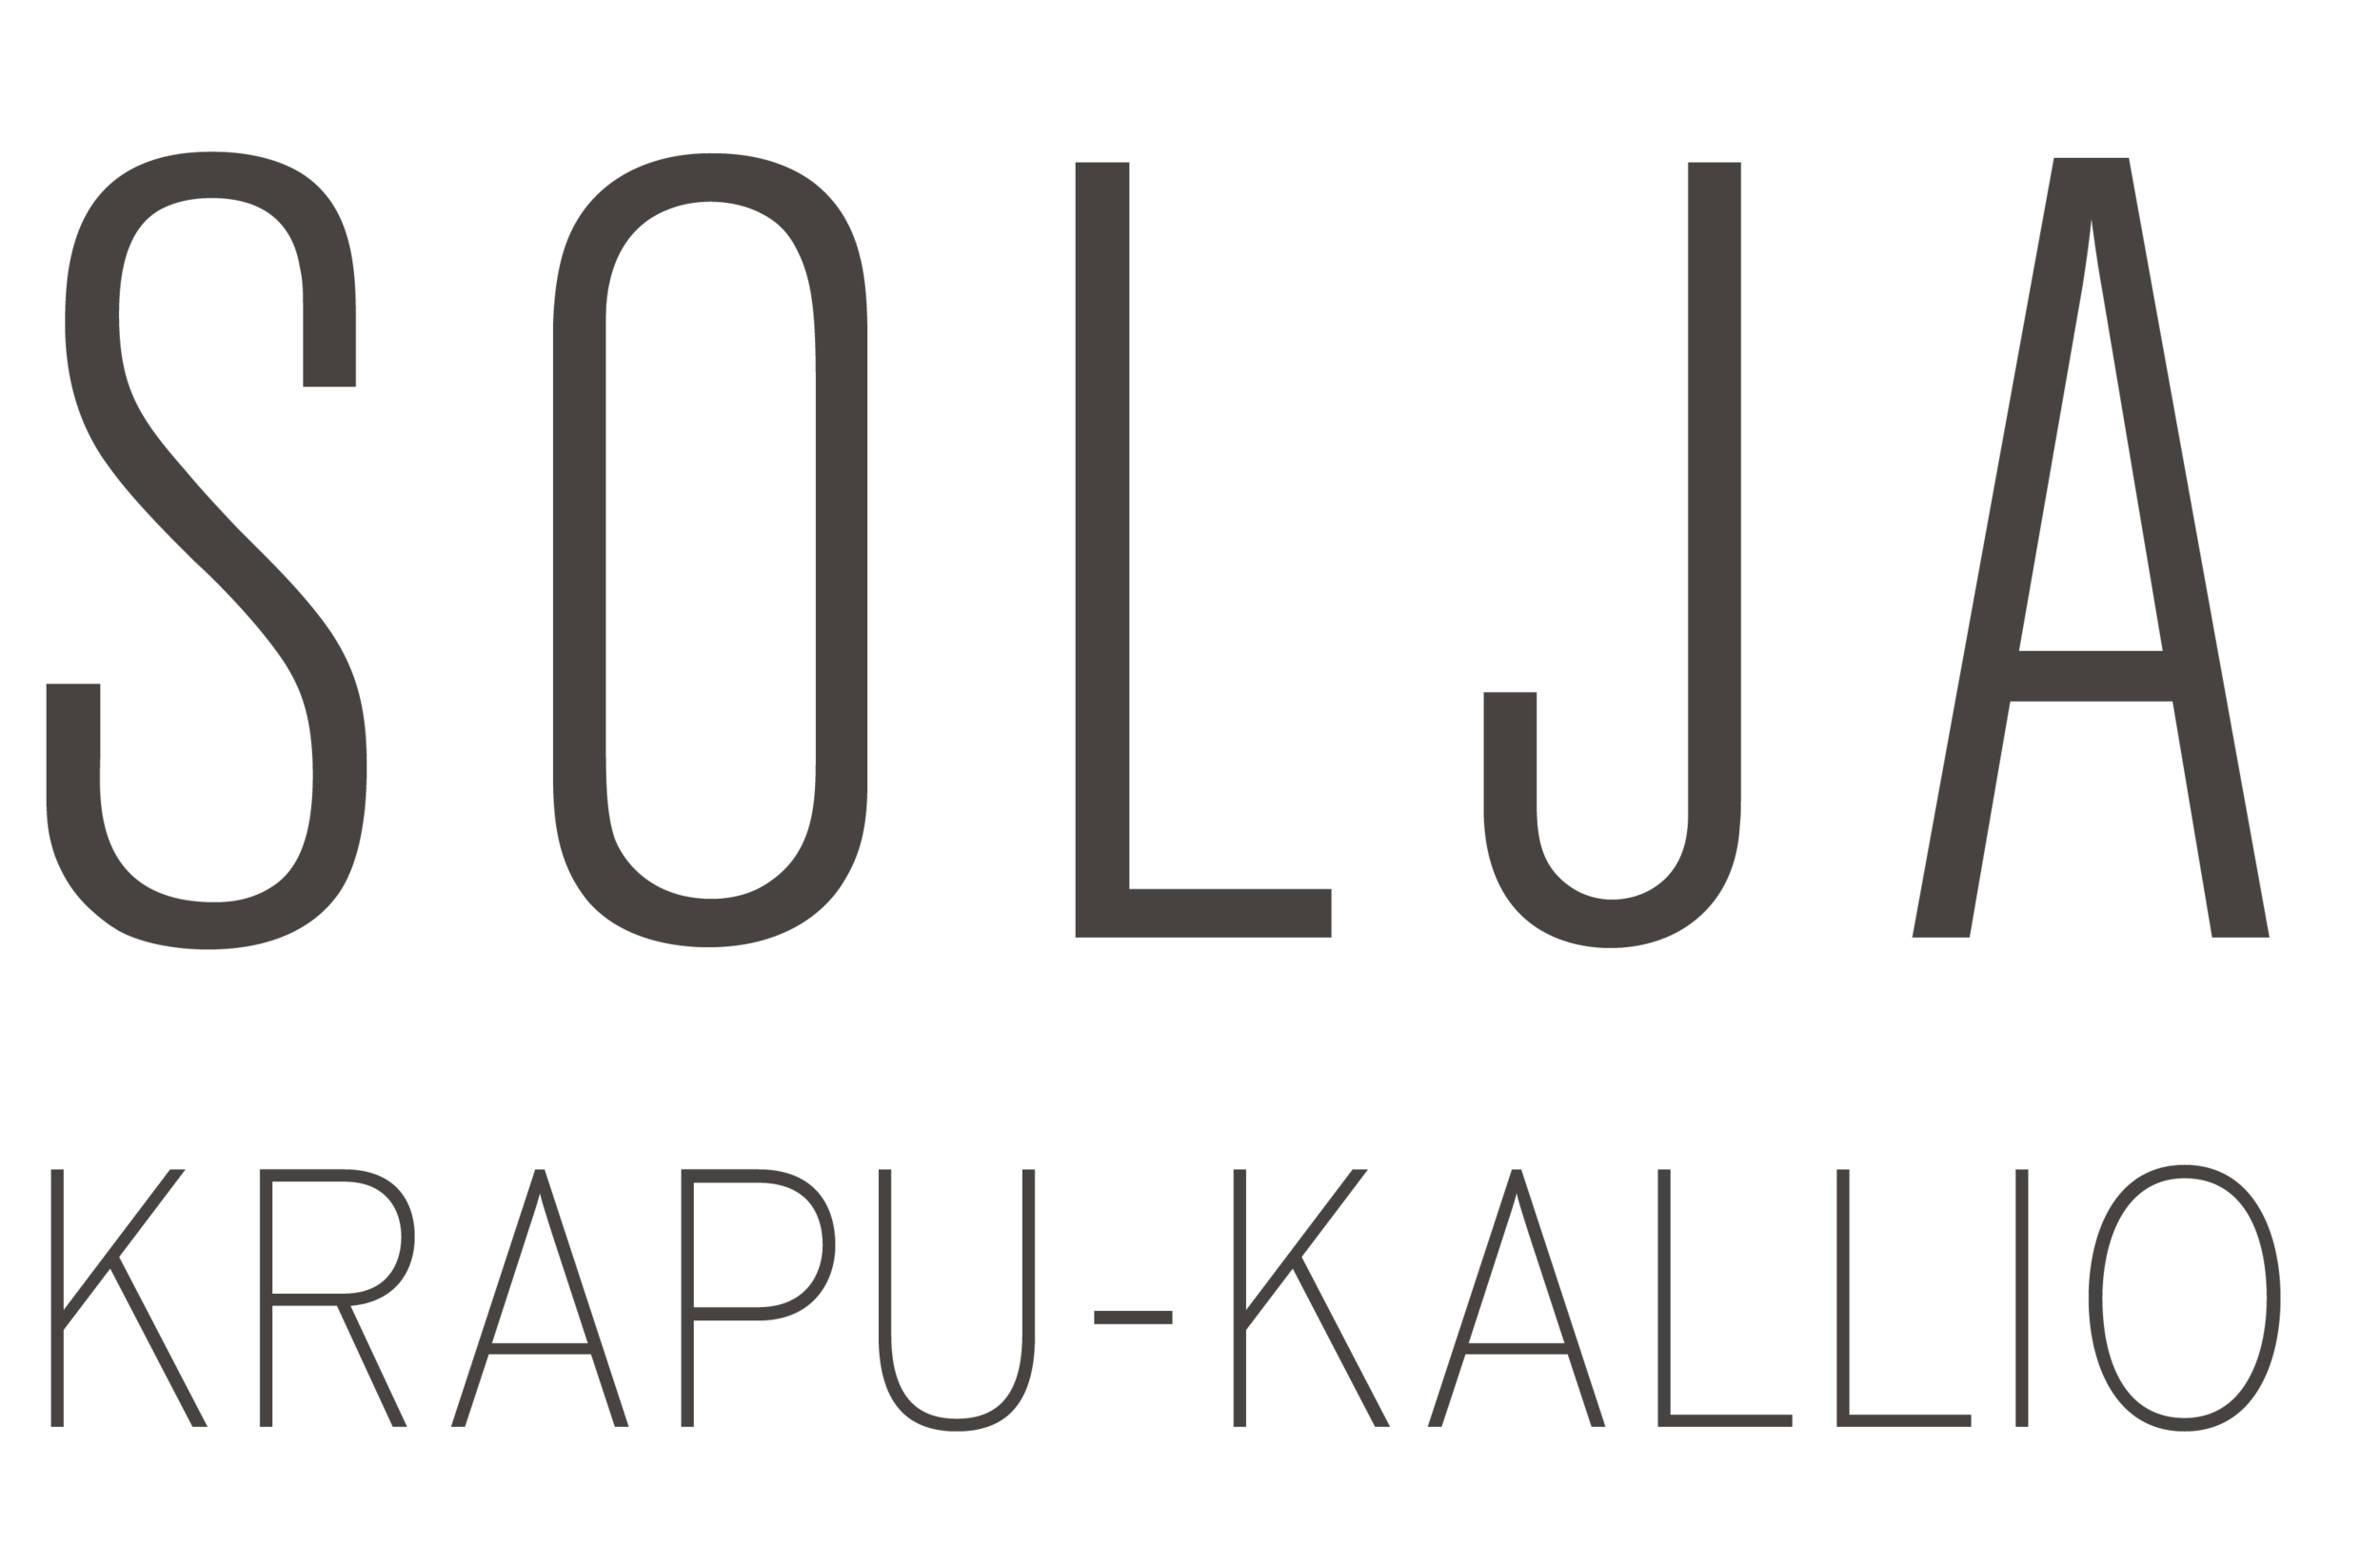 Solja Krapu-Kallio